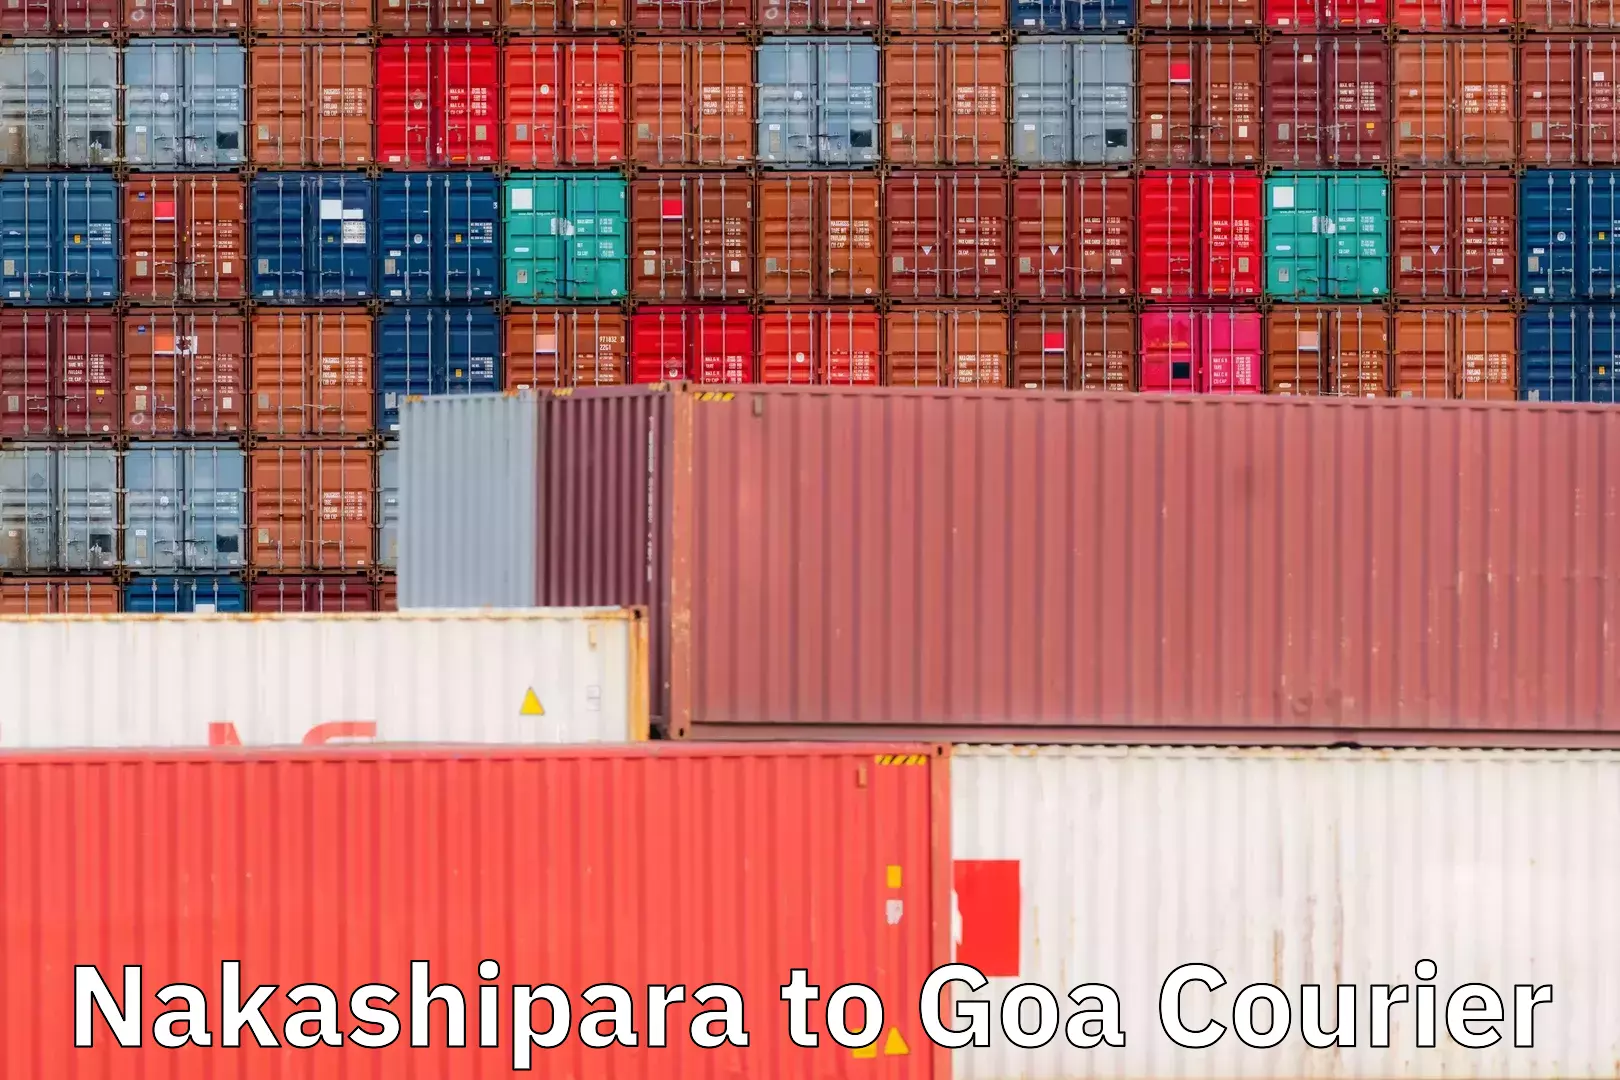 Optimized shipping routes in Nakashipara to Goa